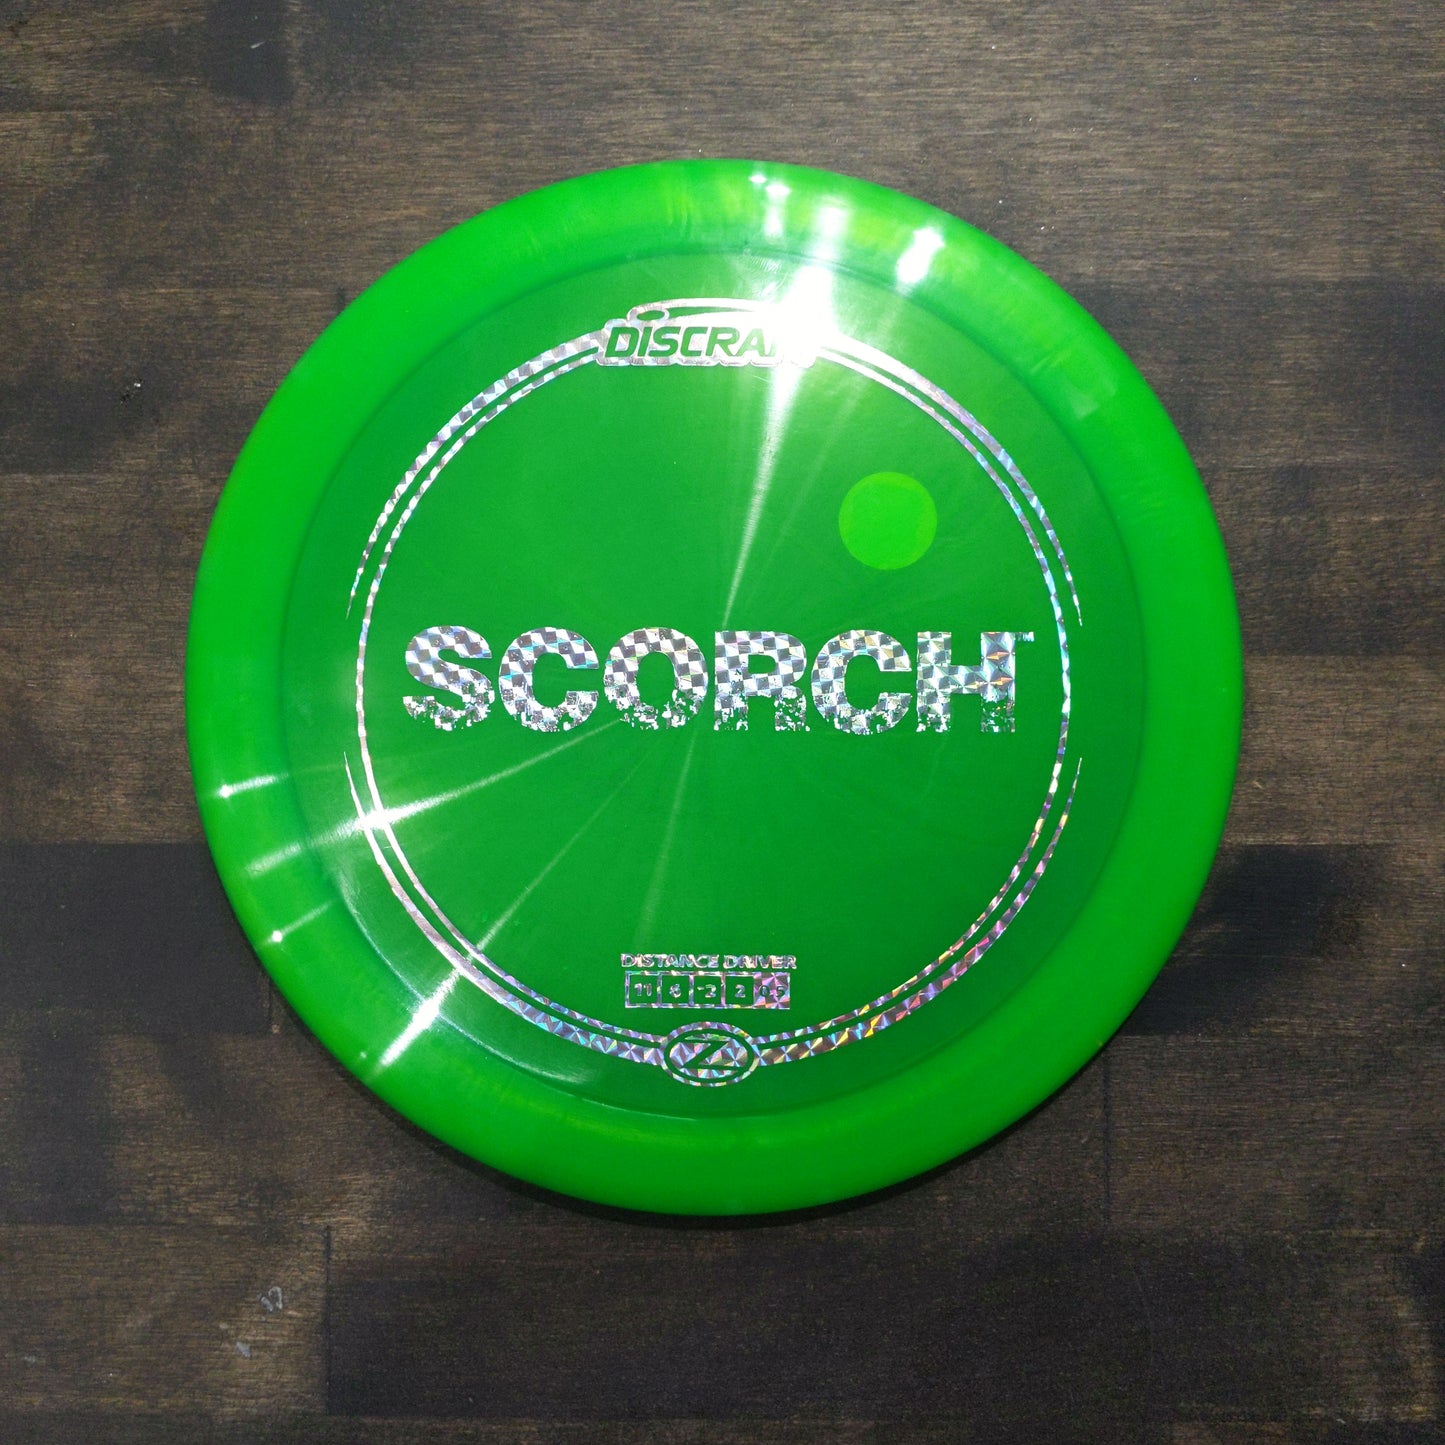 Scorch